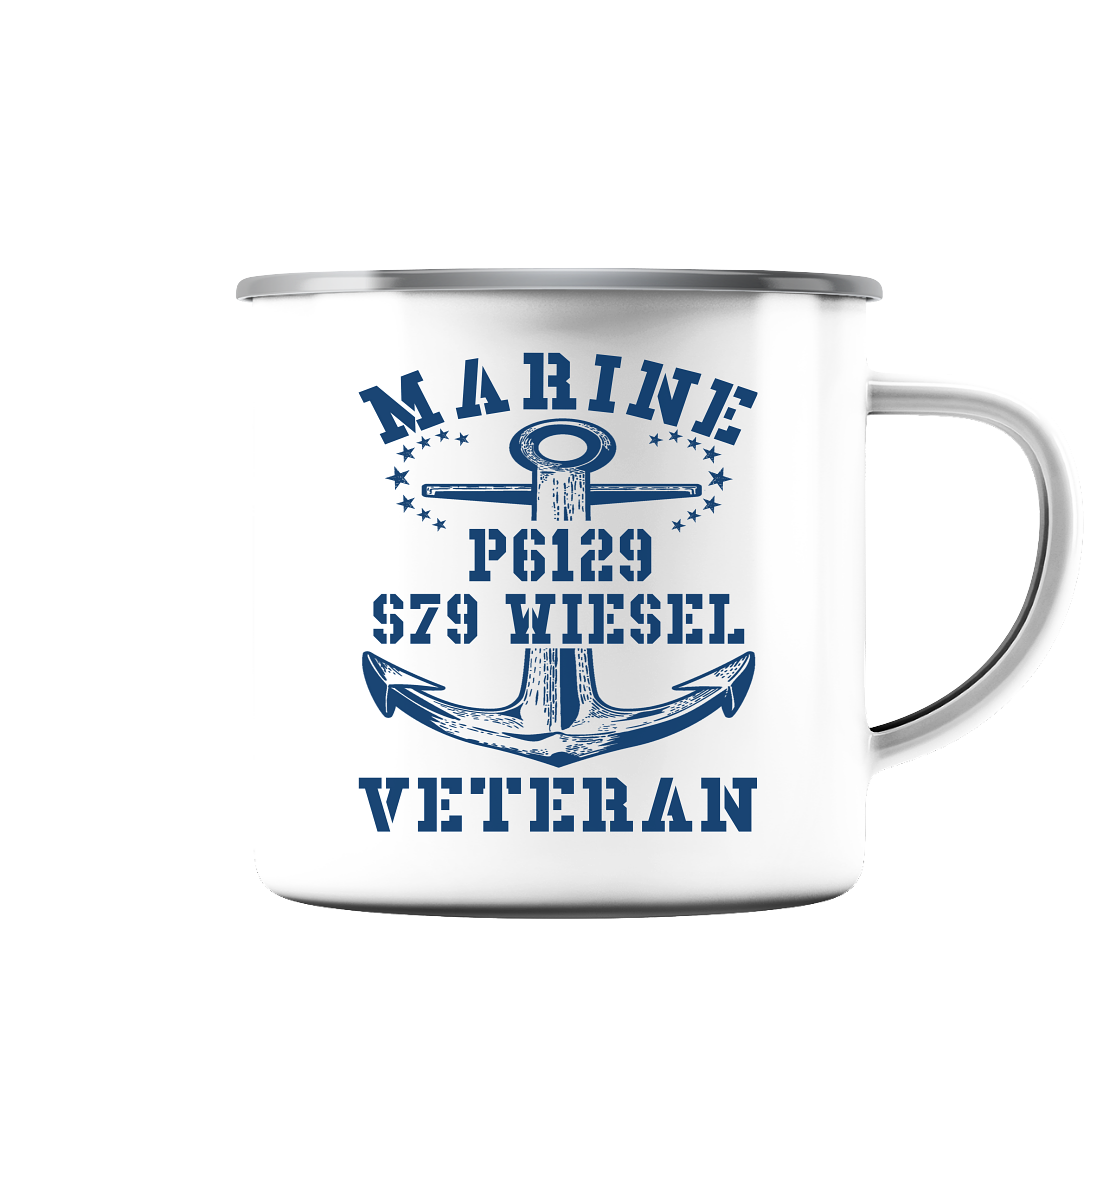 FK-Schnellboot P6129 WIESEL Marine Veteran - Emaille Tasse (Silber)